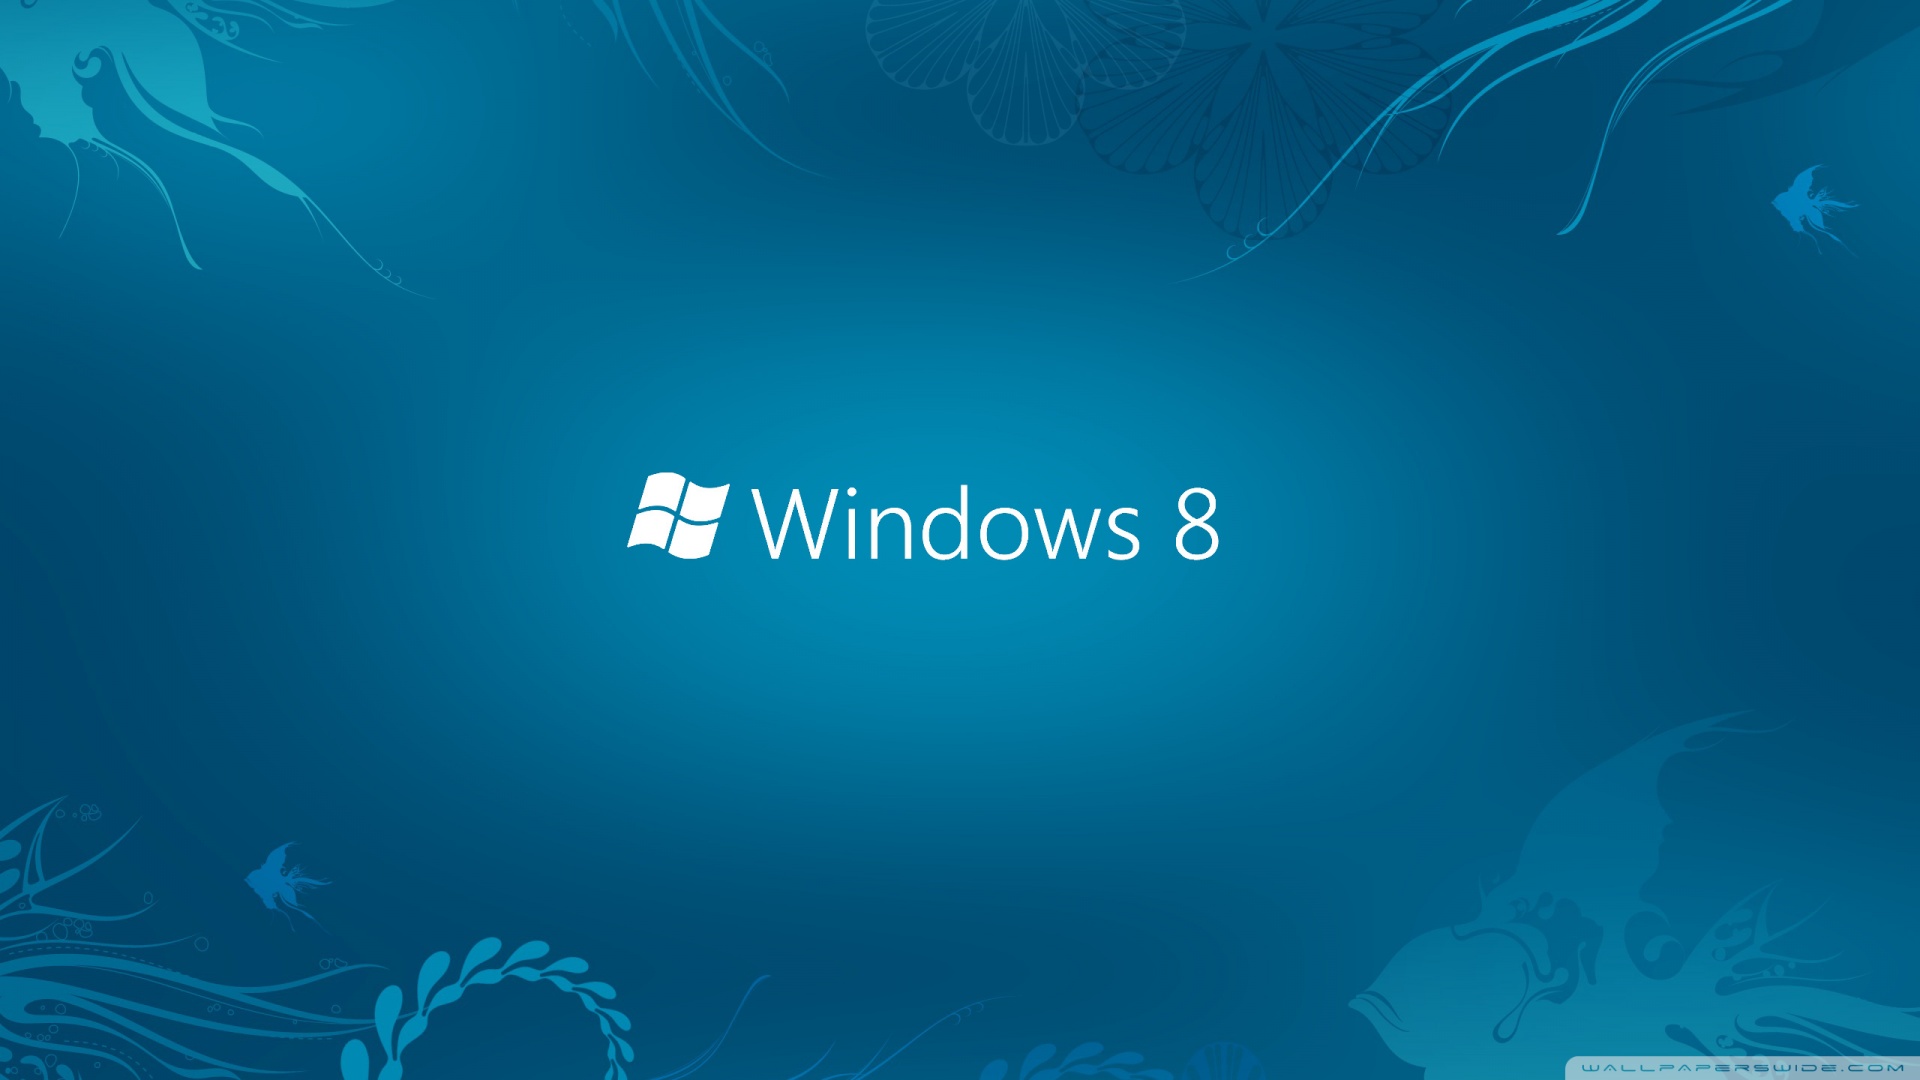 Windows 8 Blue HD desktop wallpaper : High Definition : Fullscreen ...